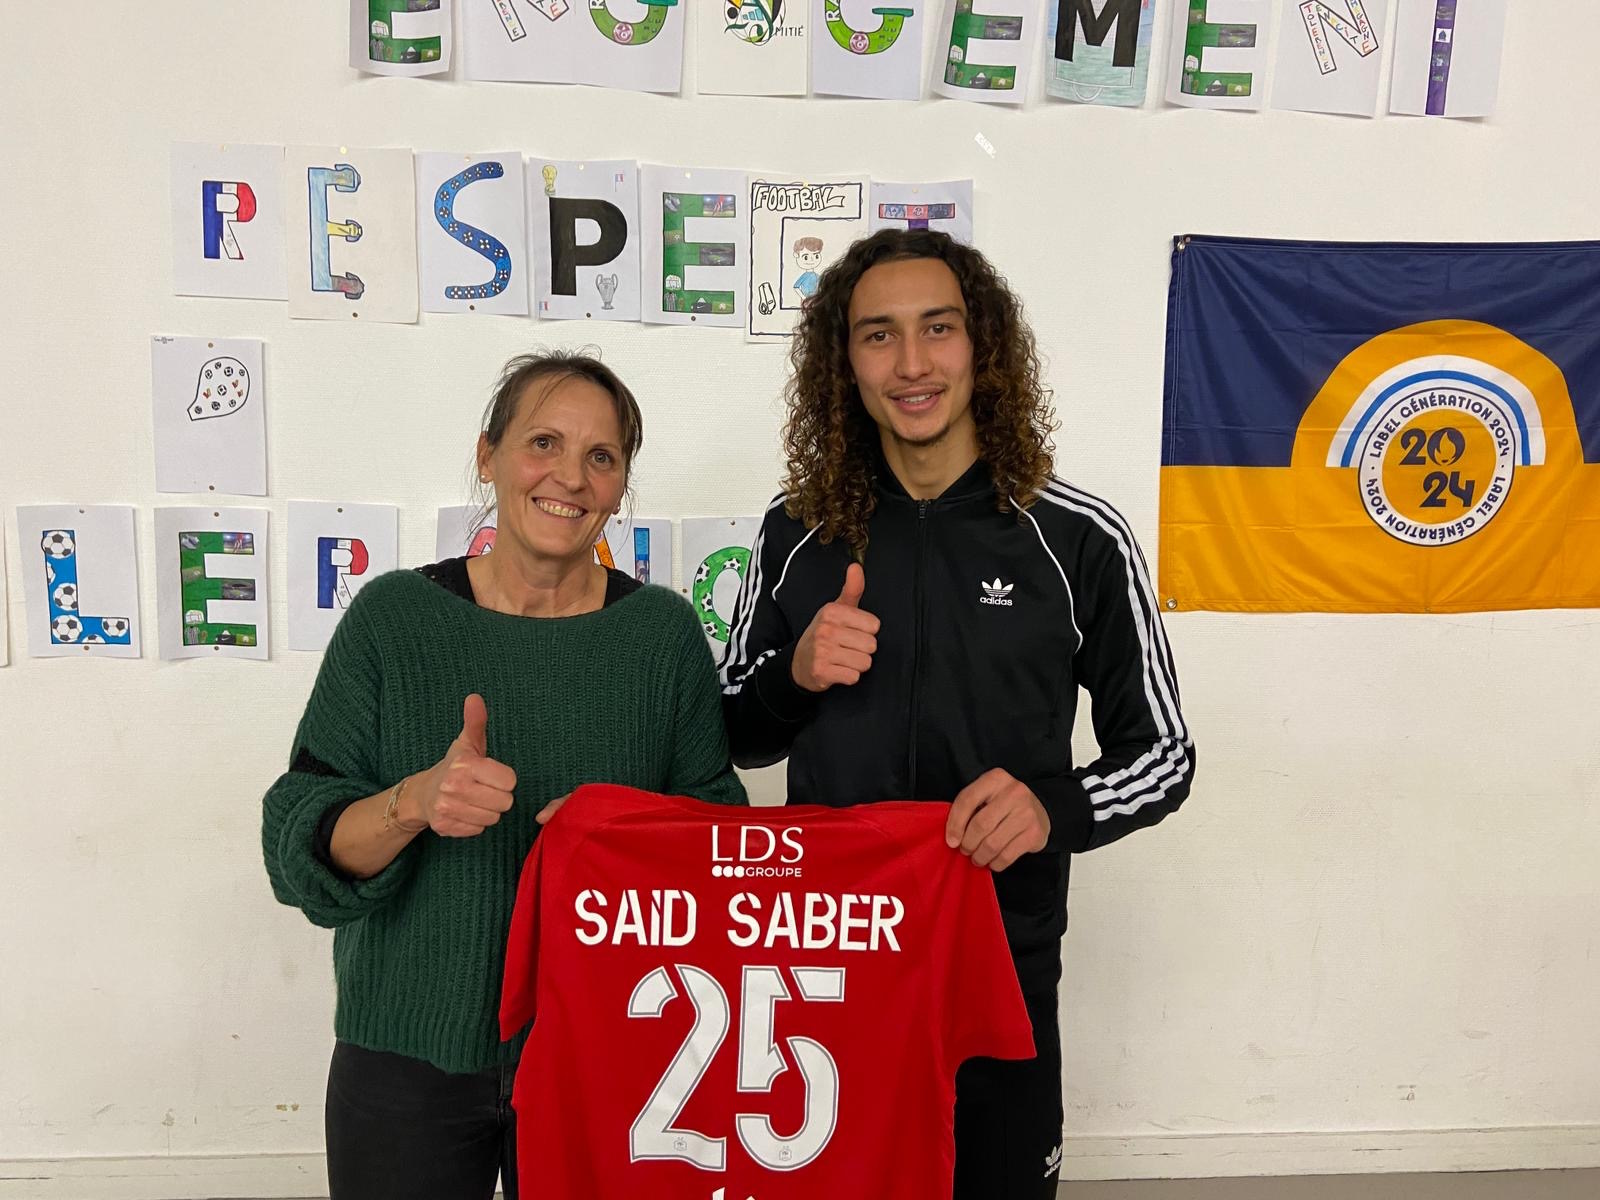 Saïd Saber parrain d’une section sportive à Besançon